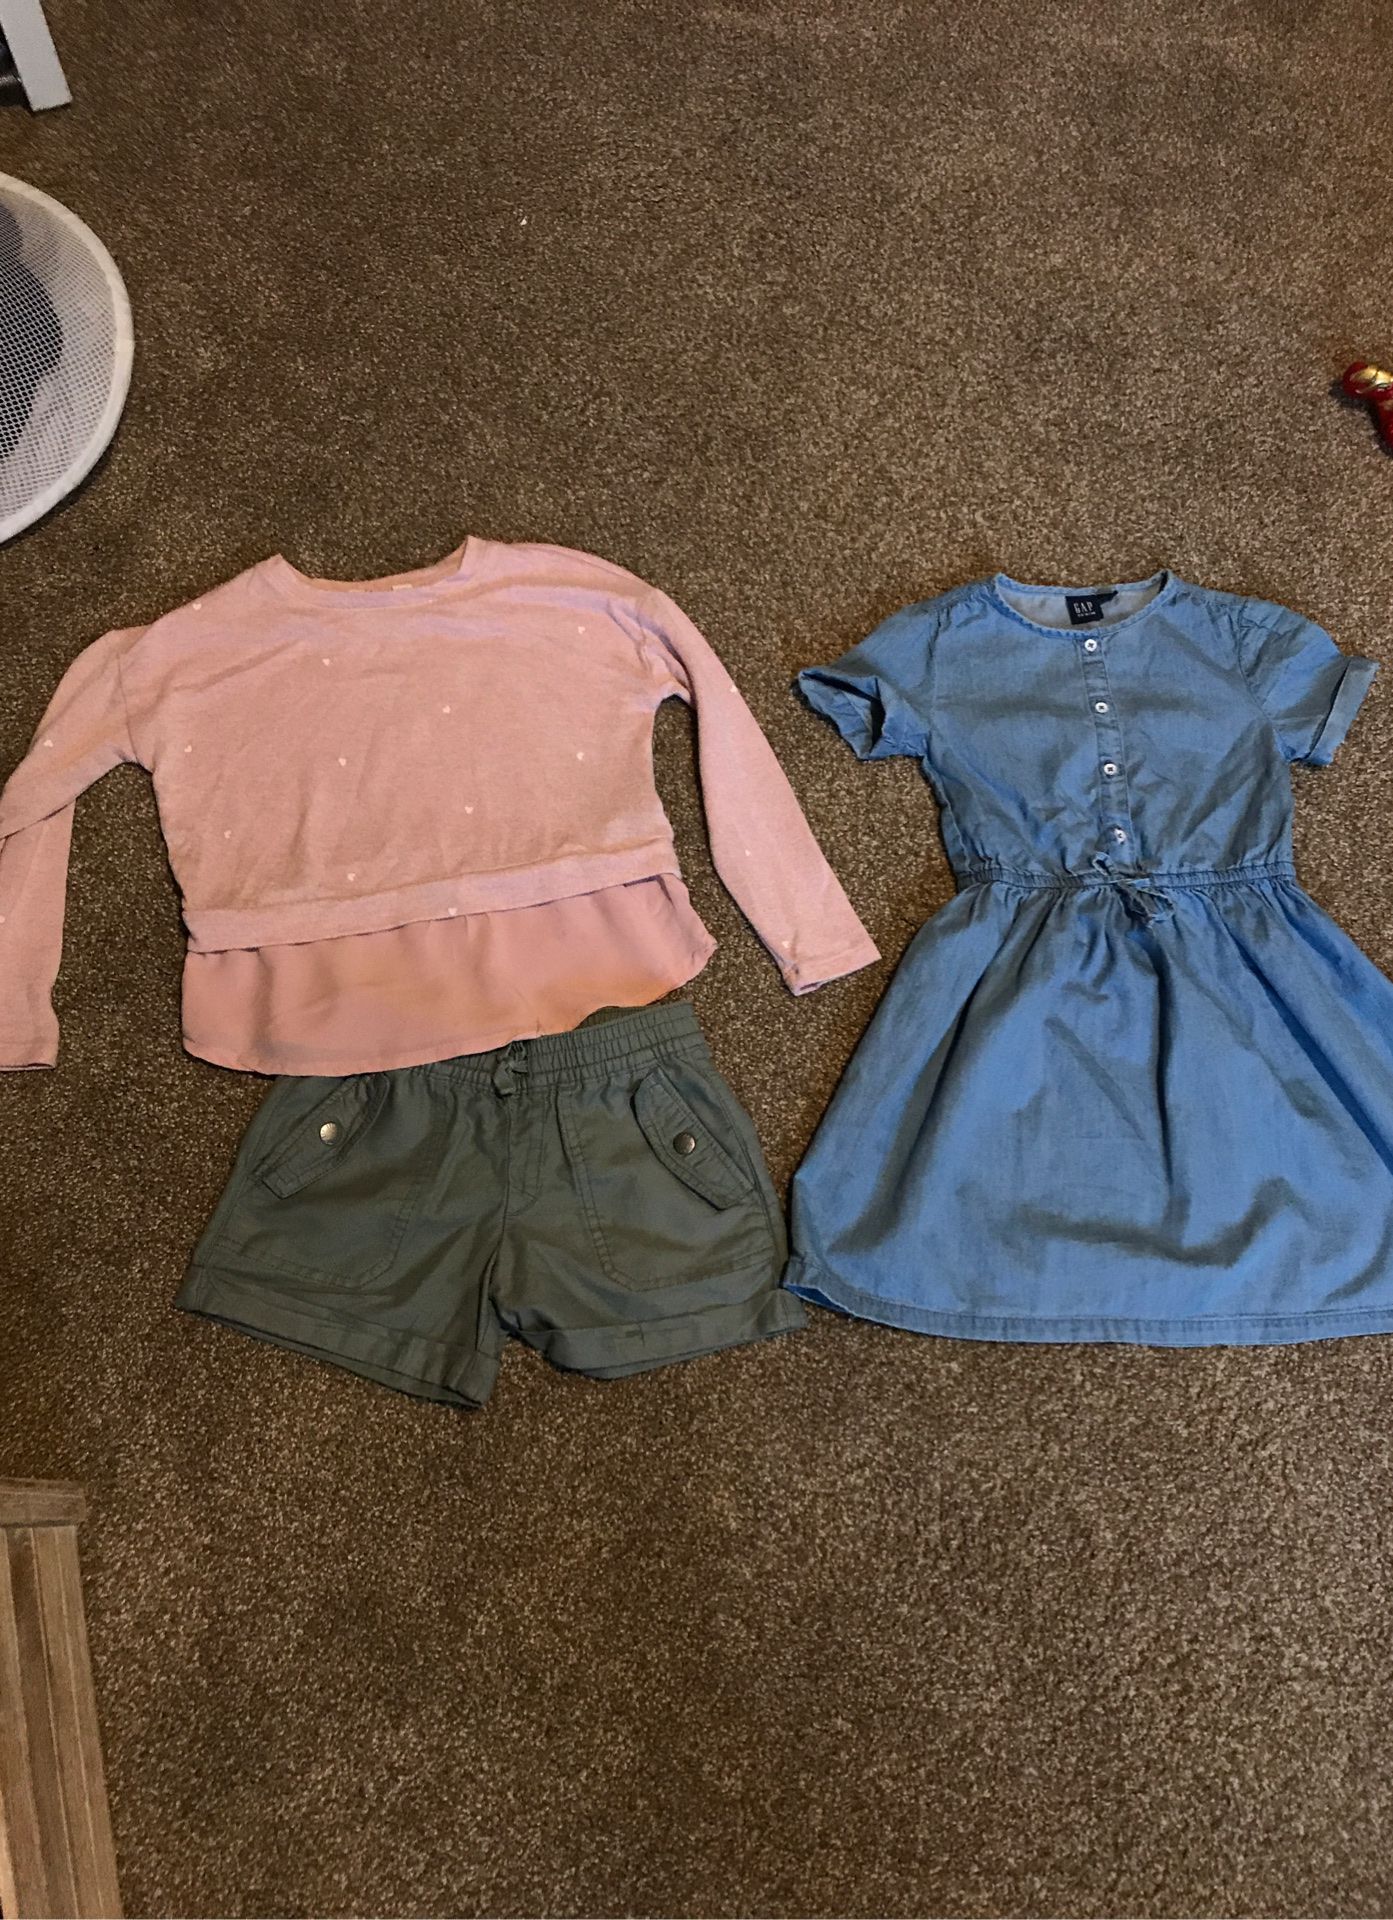 Gap clothes